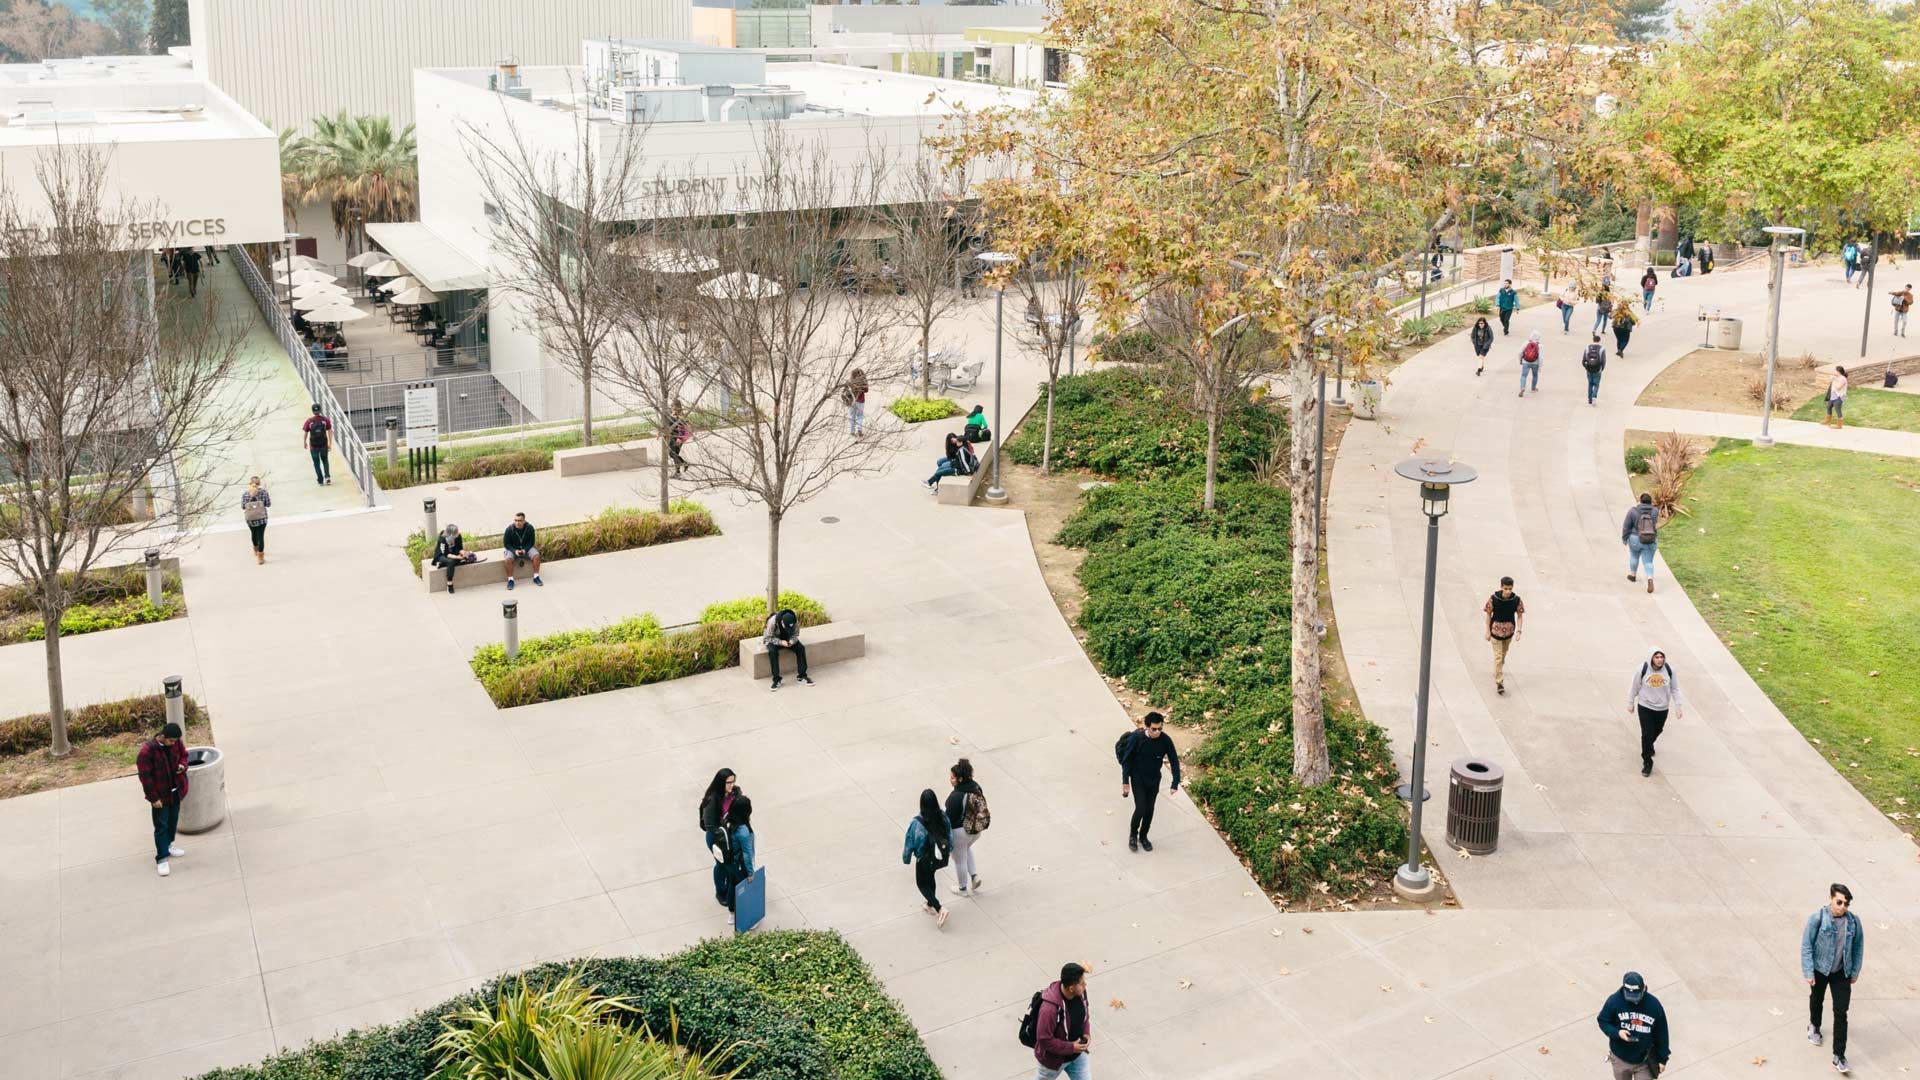 Ett universitetsområde med grönområden och gångvägar som används av studenter med ryggsäckar